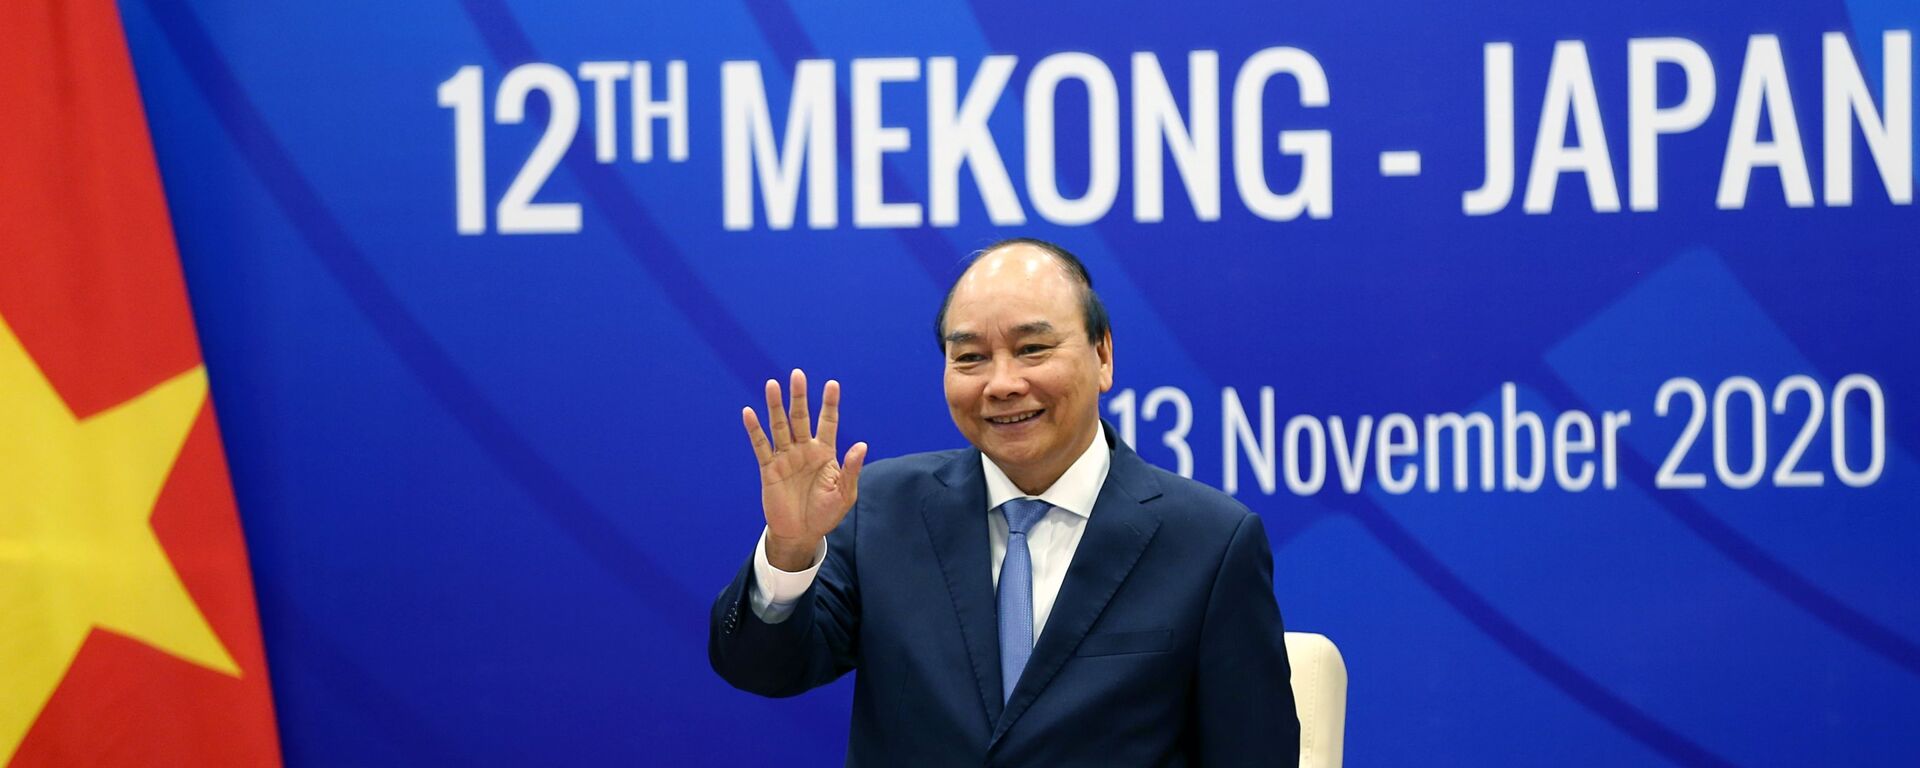 Thủ tướng Nguyễn Xuân Phúc chào lãnh đạo các nước ASEAN, Nhật Bản và các đại biểu dự Hội nghị Cấp cao Mekong - Nhật Bản lần thứ 12 theo hình thức trực tuyến. - Sputnik Việt Nam, 1920, 13.11.2020